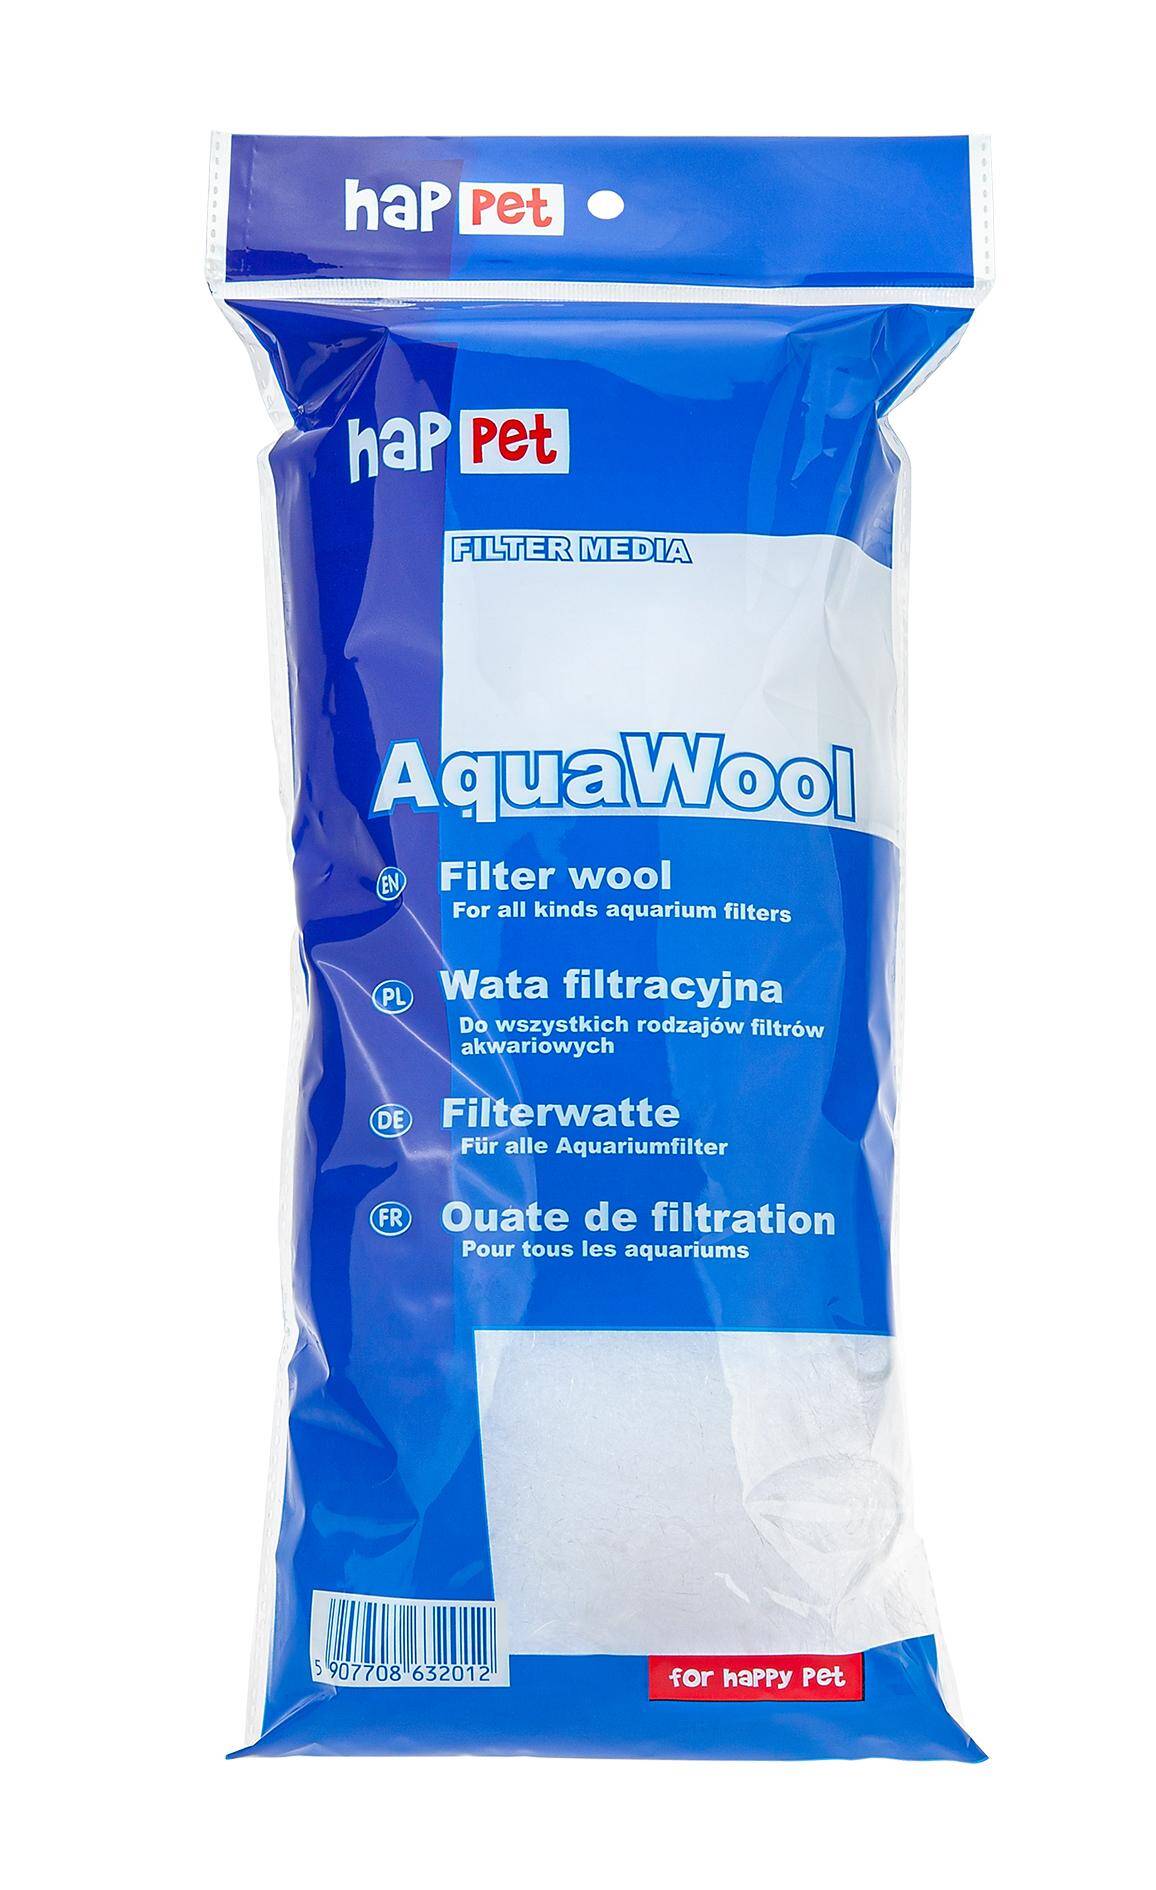 Aquawool wata filtracyjna wkład Happet (Zdjęcie 1)